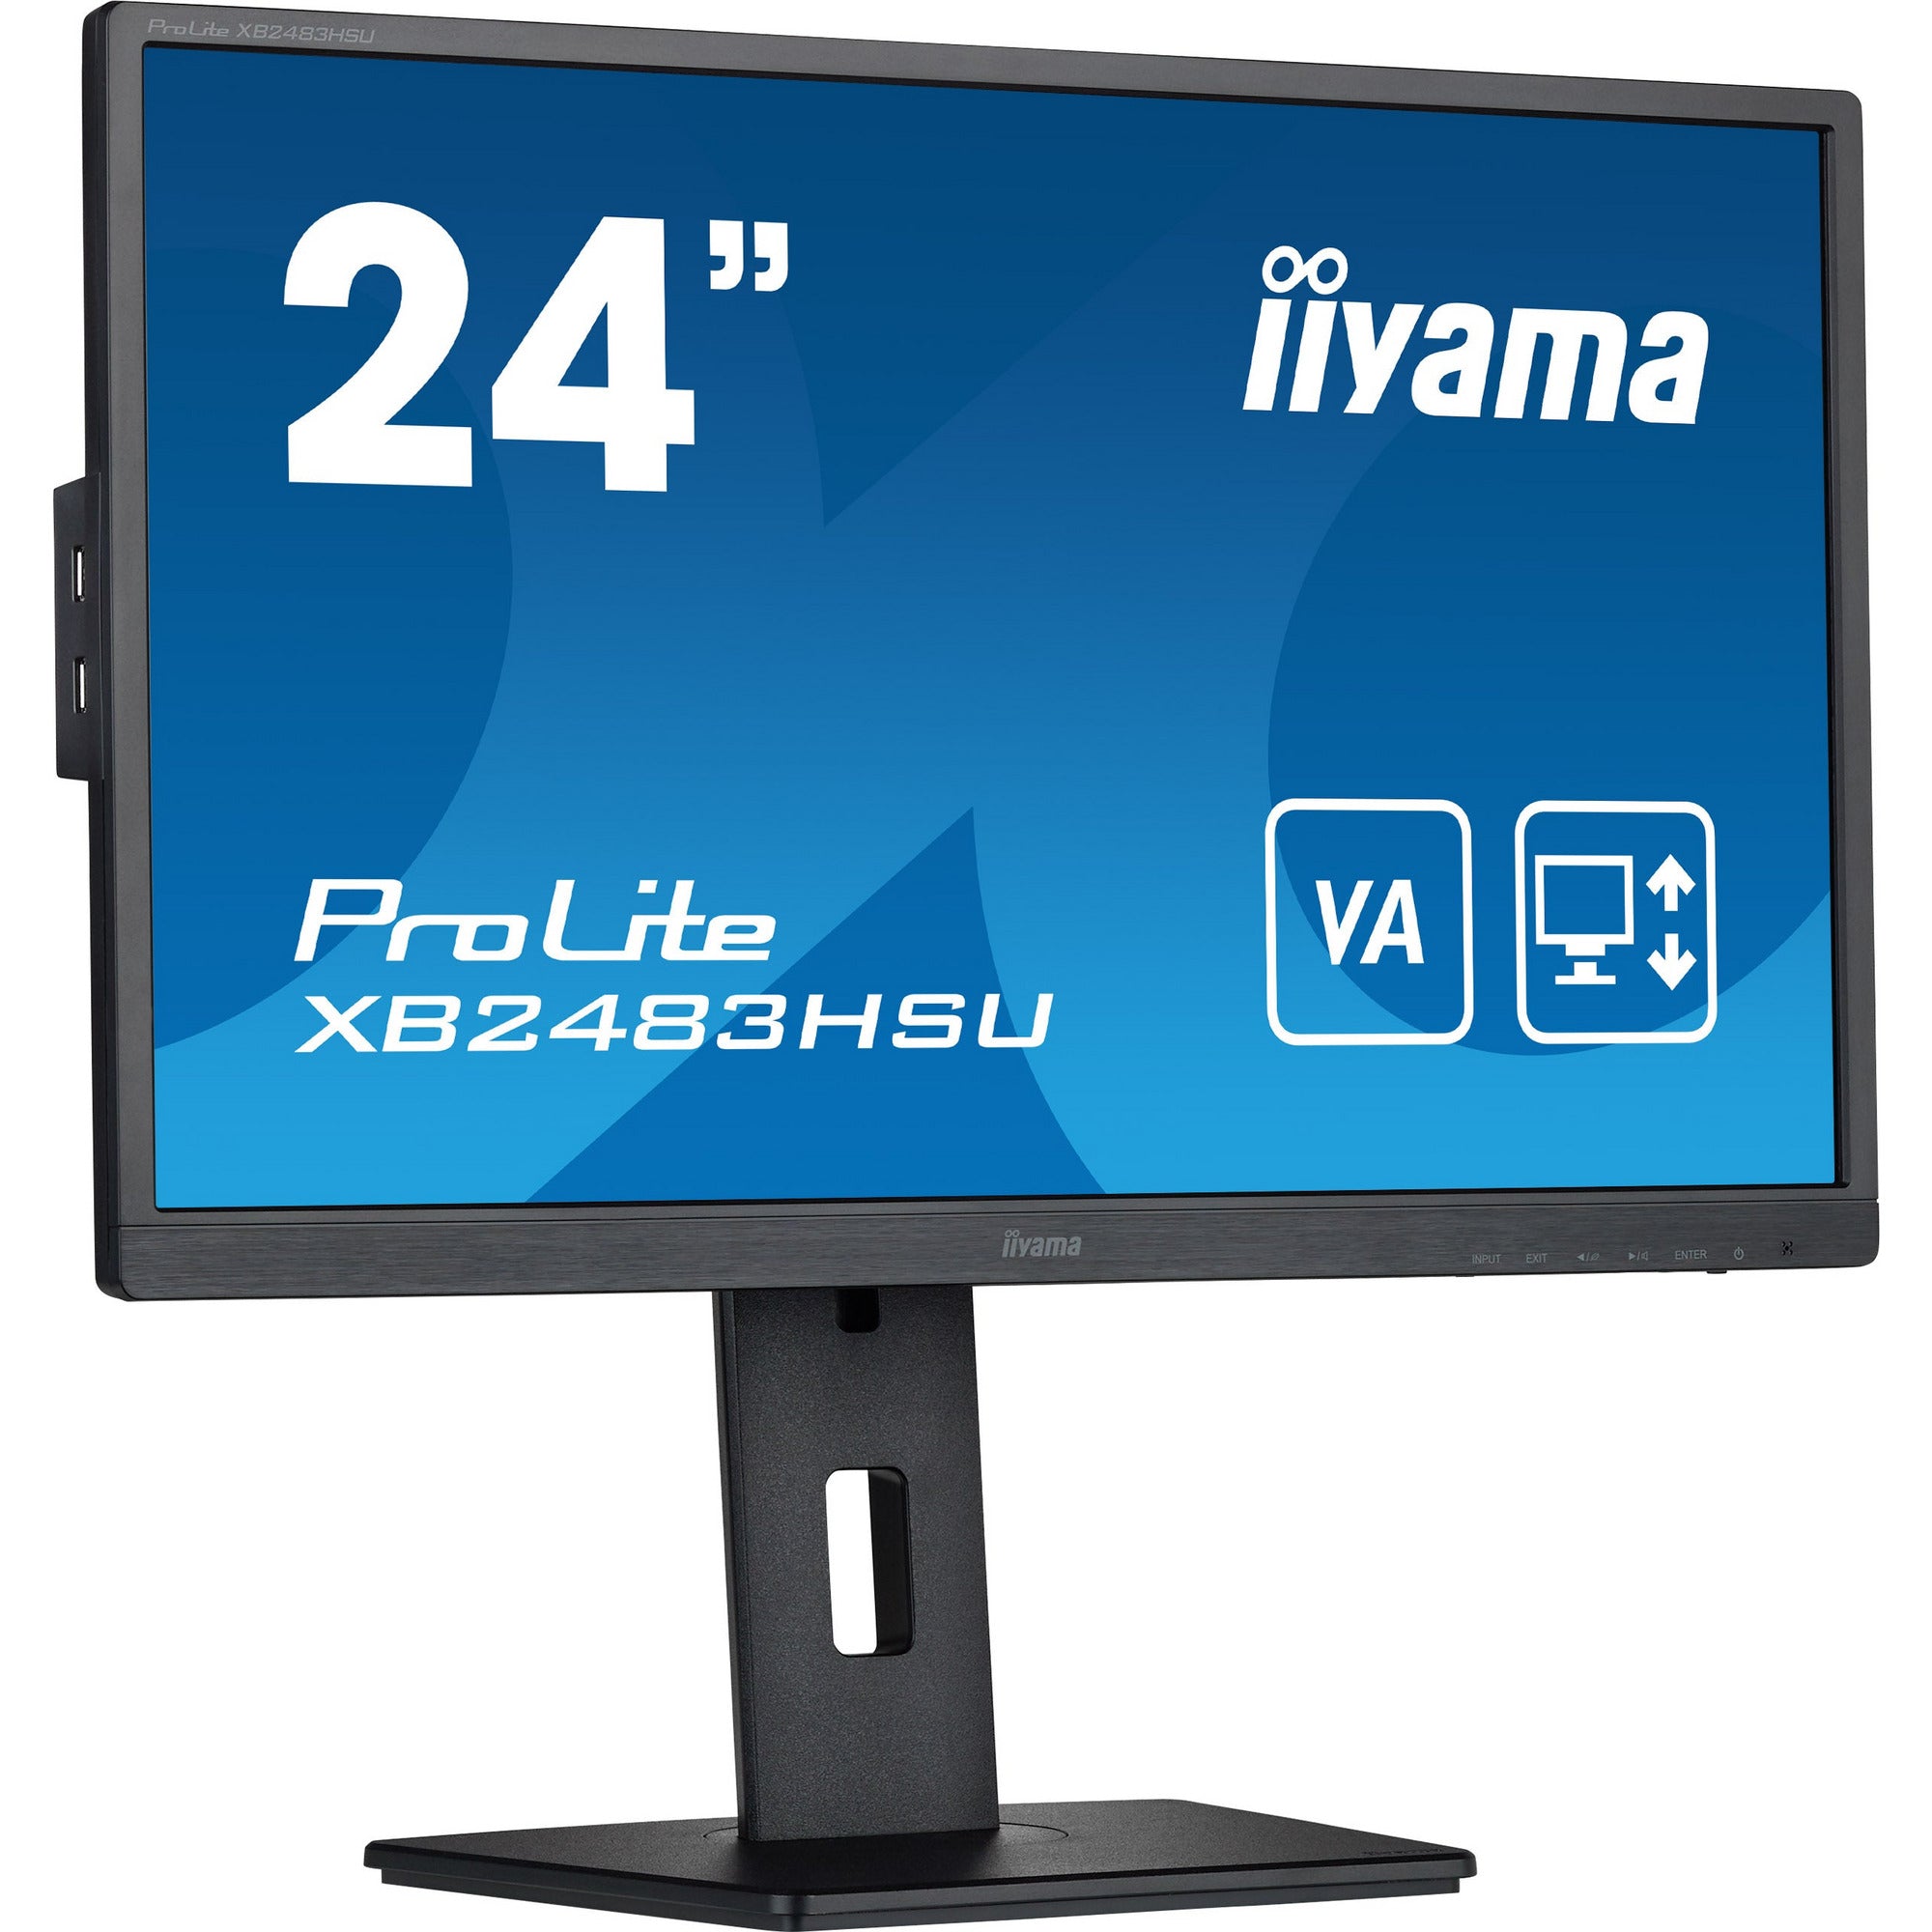 iiyama ProLite XB2483HSU-B5 24" LED Display with Height Adjust Stand